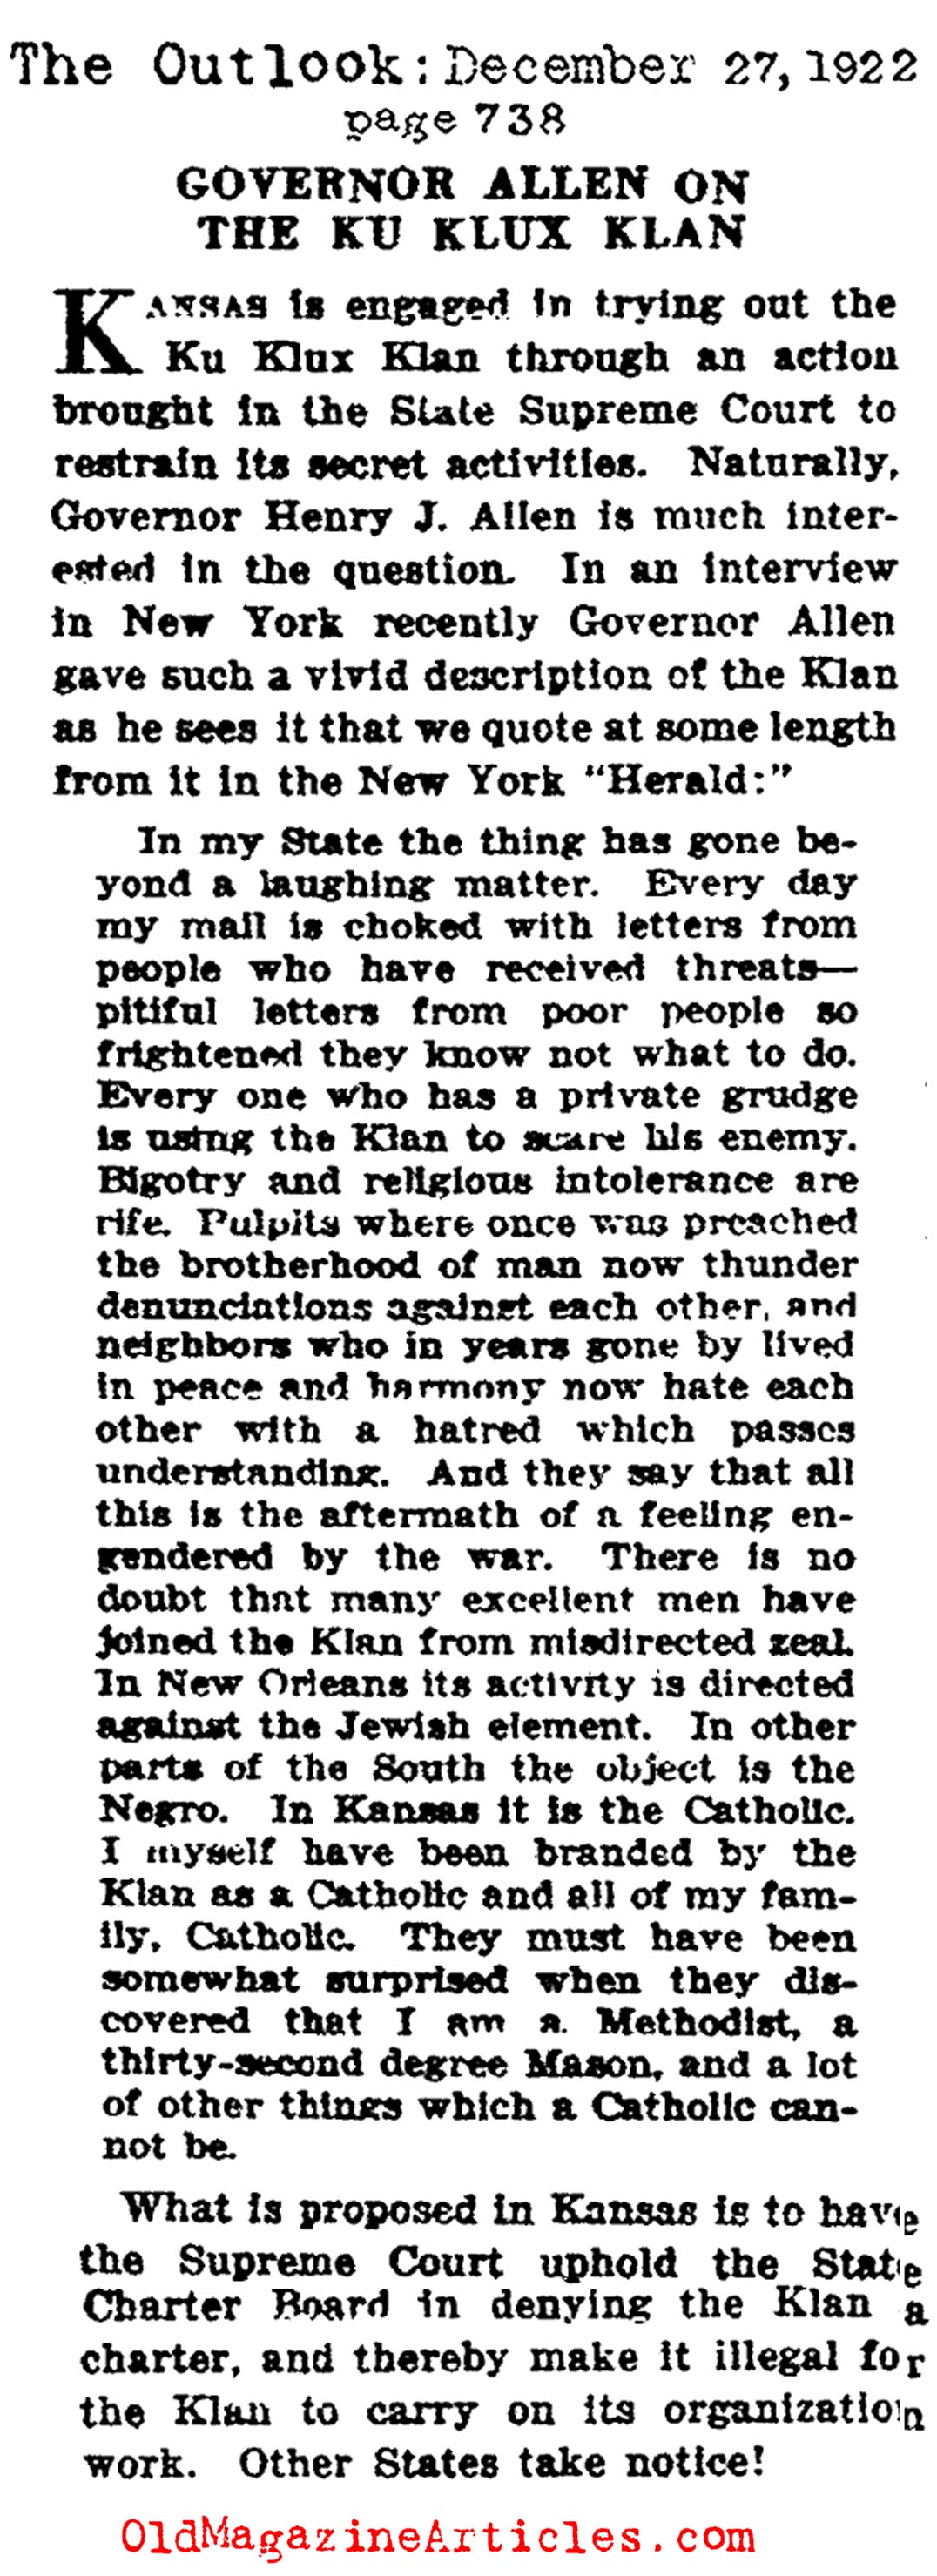 Kansan Governor Henry J. Allen Takes On the KKK (The Outlook, 1922)